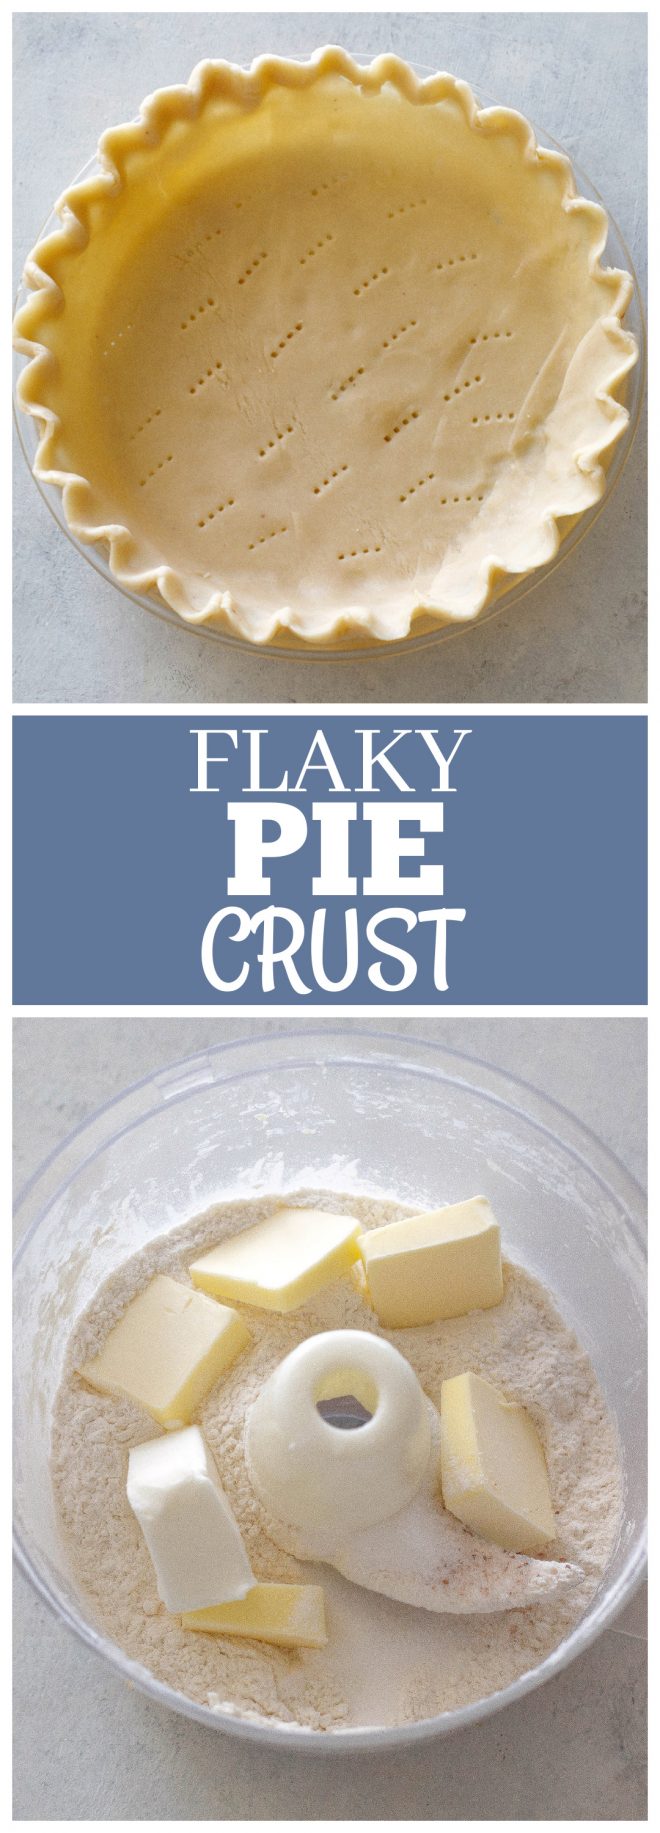 fb image - Flaky Pie Crust